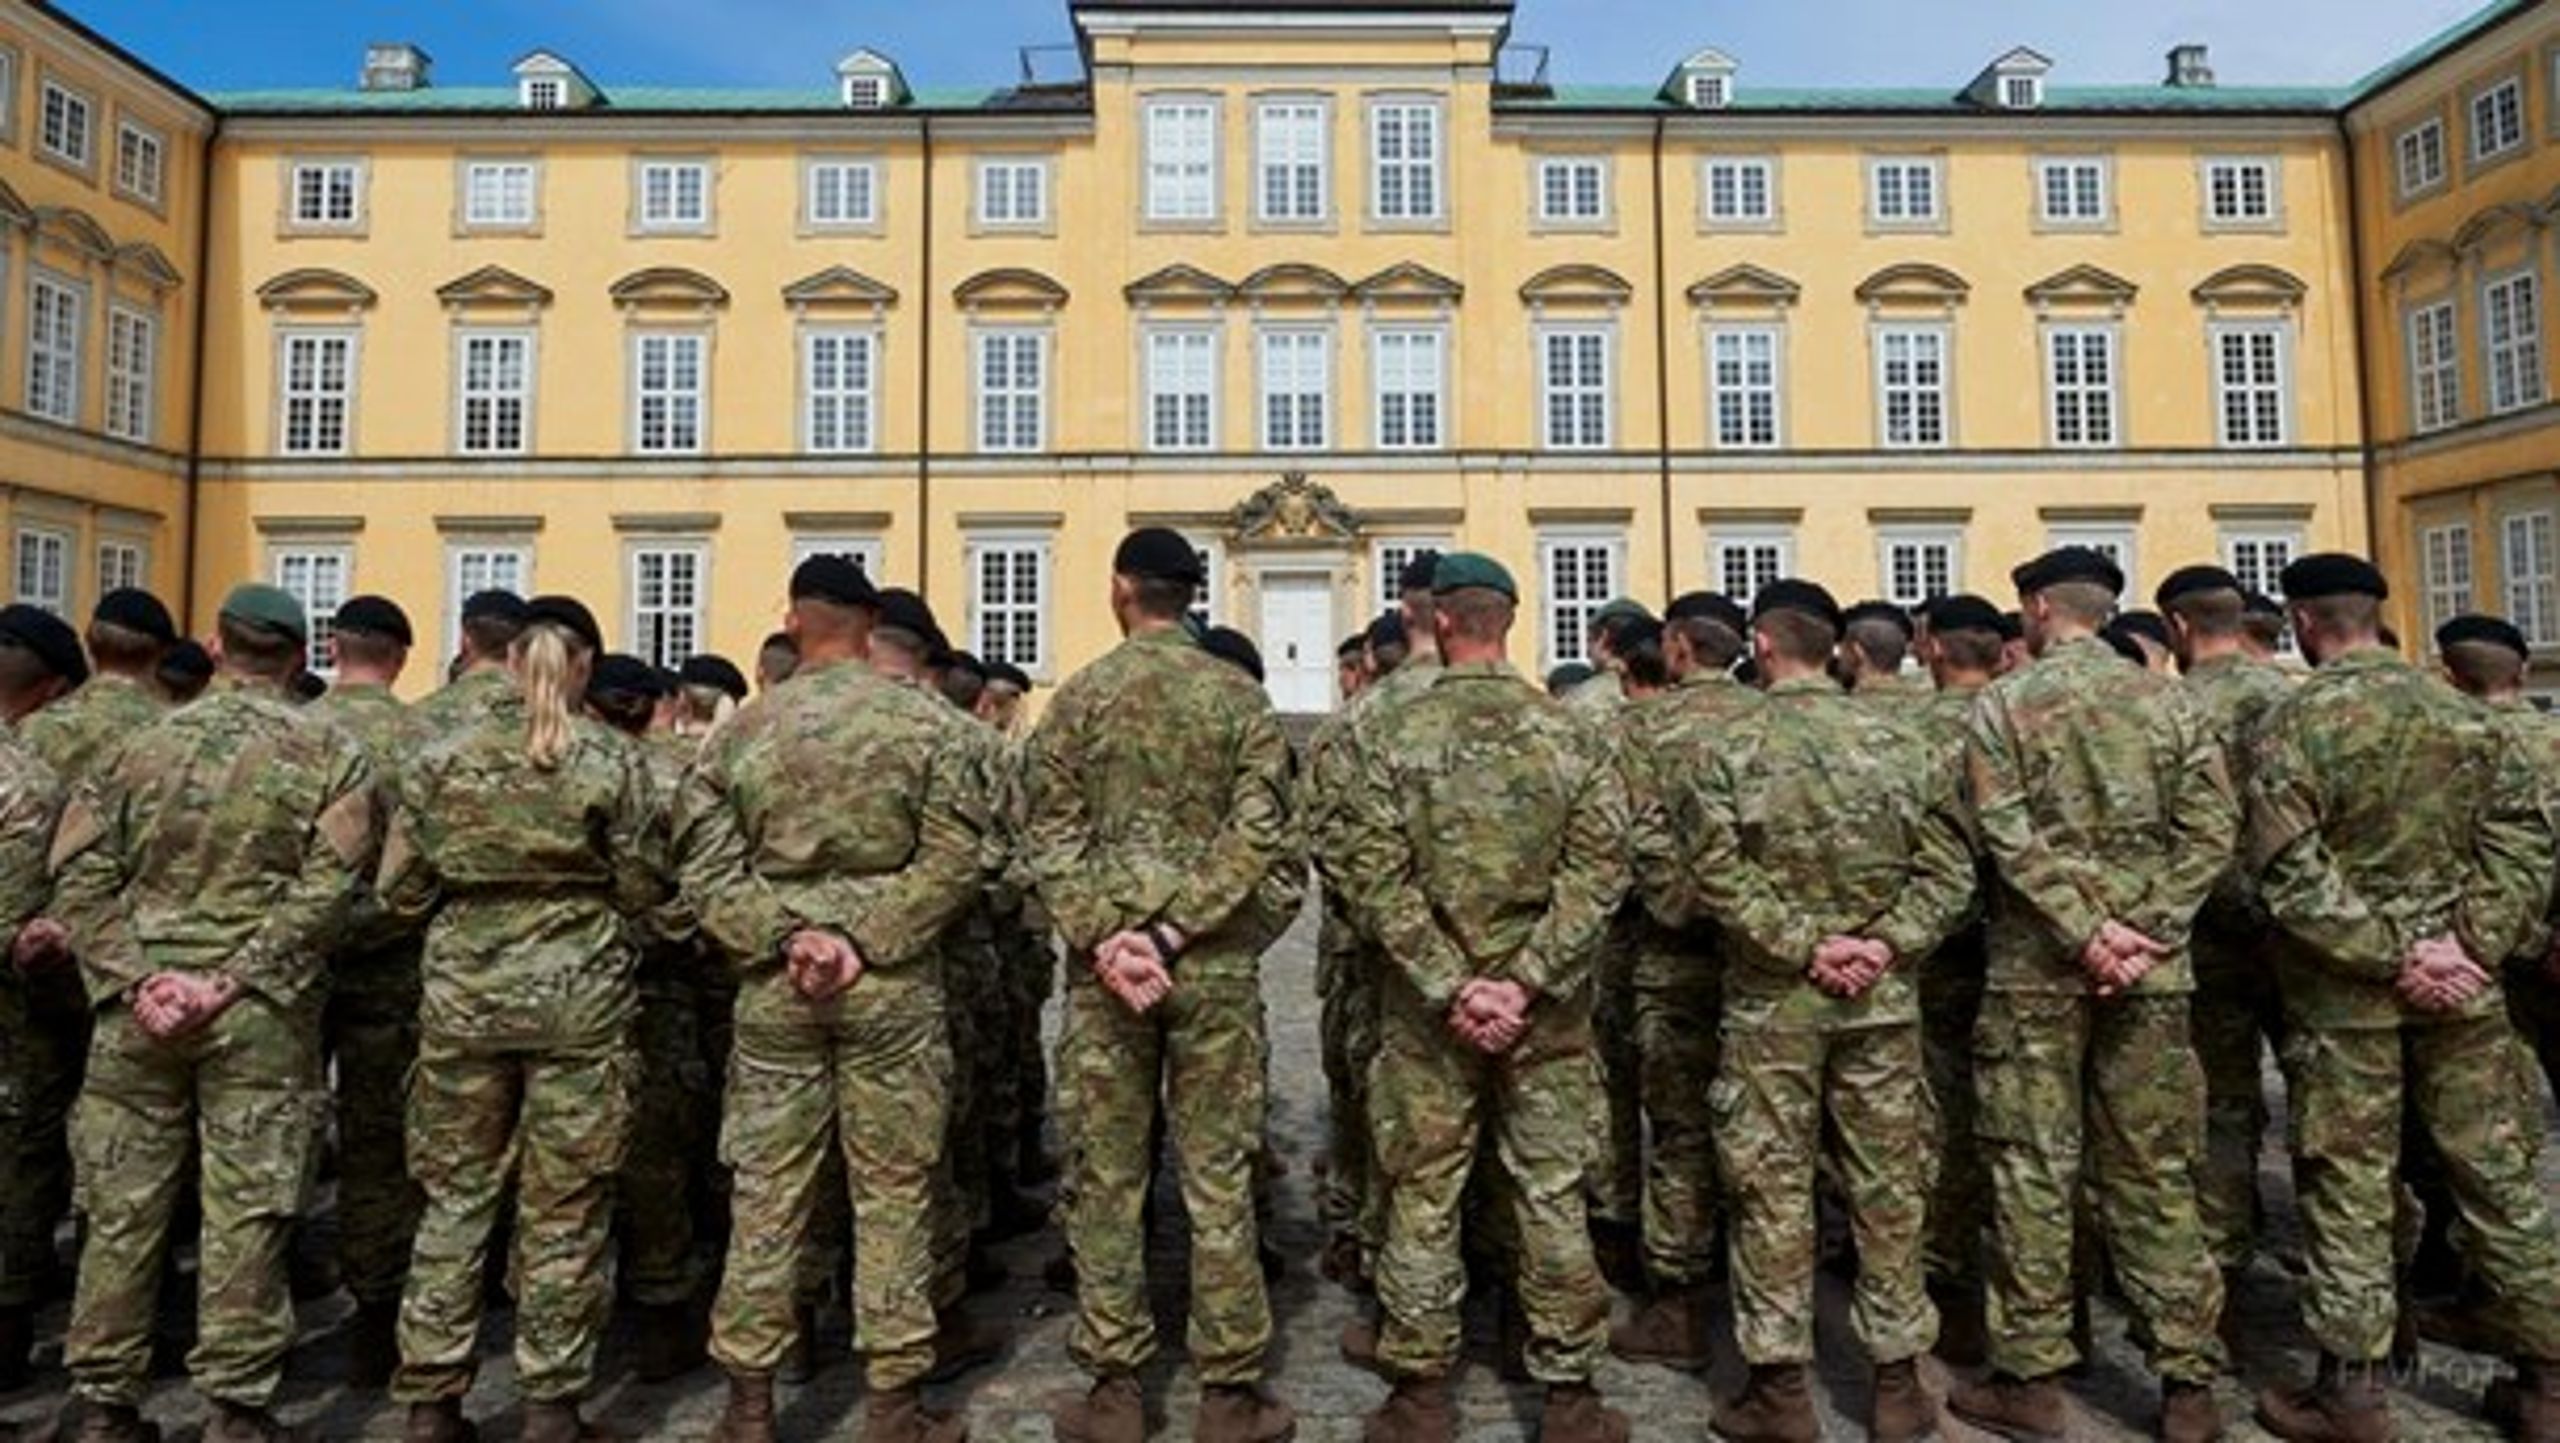 Hærens Officersskole på Frederiksberg Slot er en del af Forsvarsakademiet.